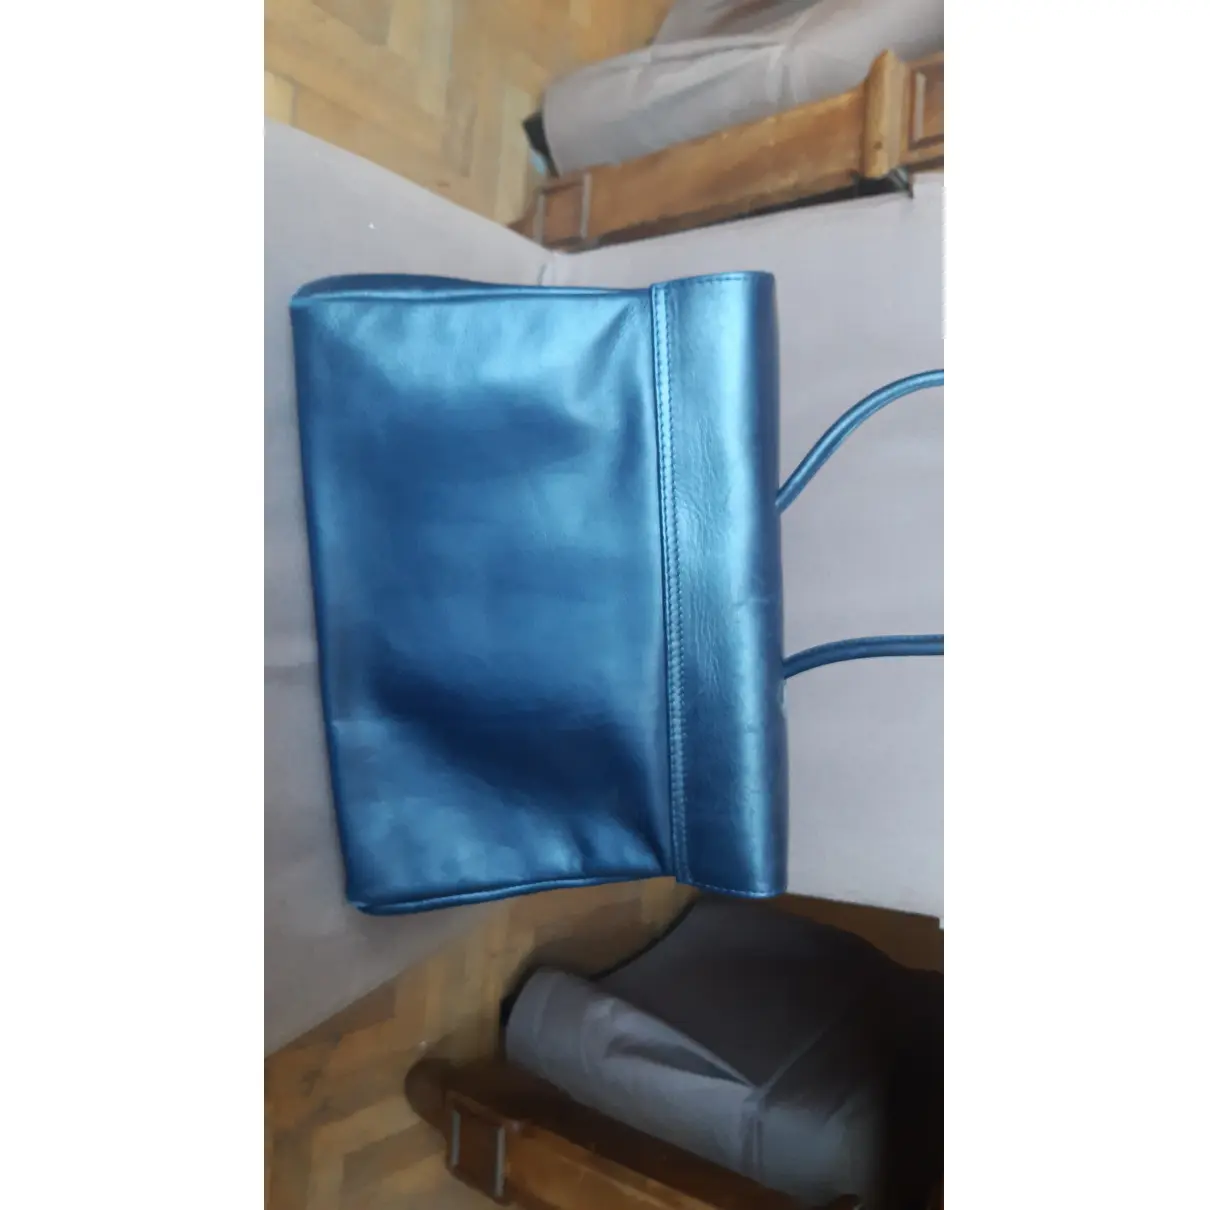 Buy Orciani Leather handbag online